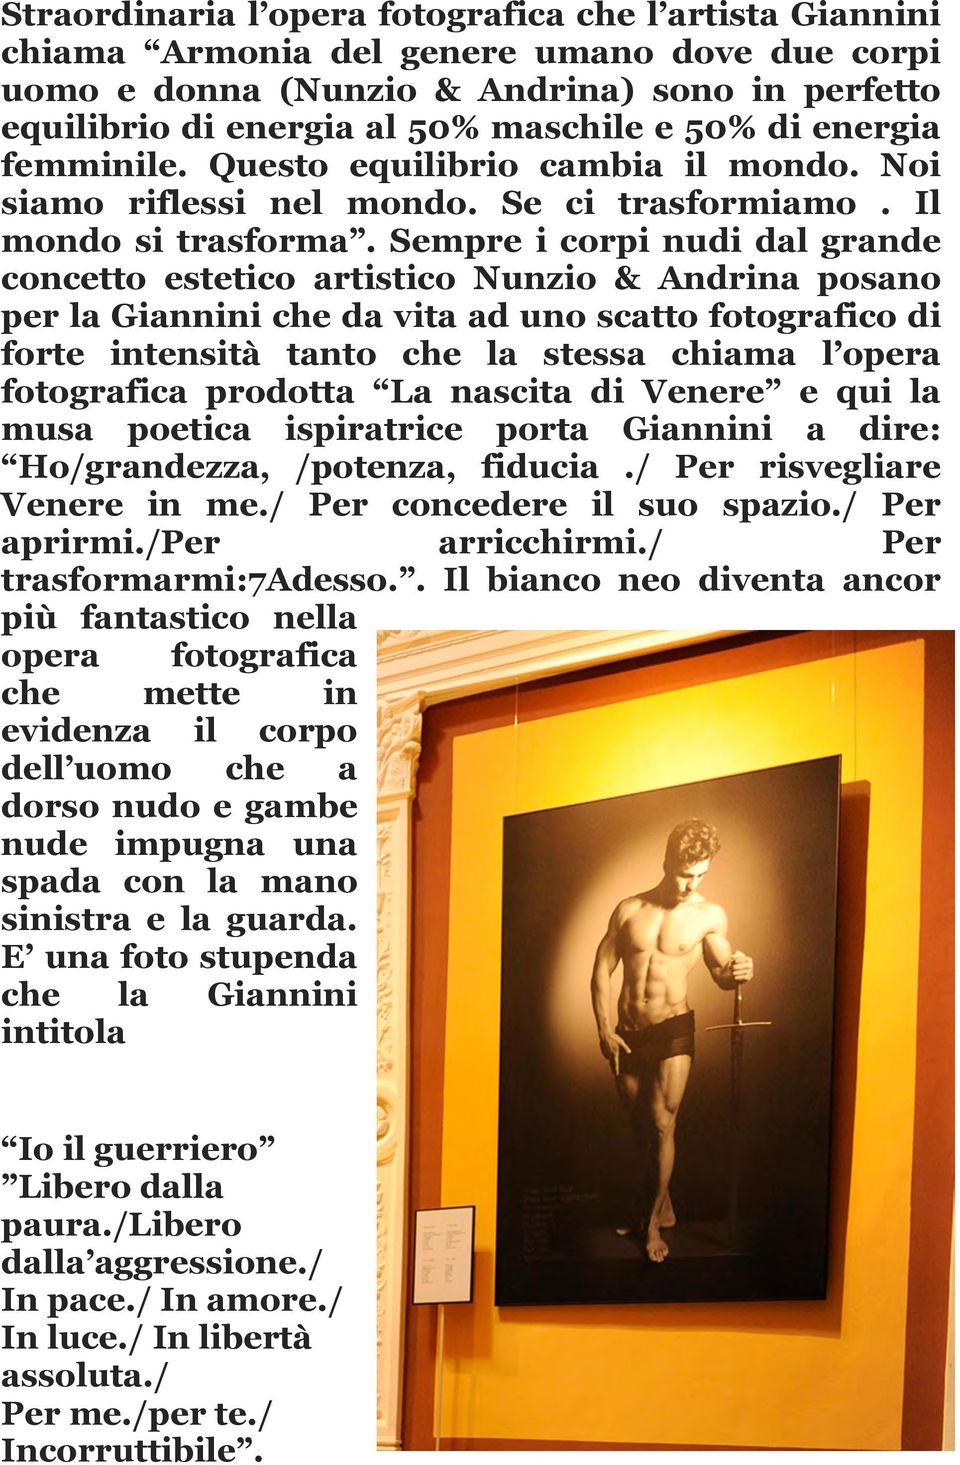 Sempre i corpi nudi dal grande concetto estetico artistico Nunzio & Andrina posano per la Giannini che da vita ad uno scatto fotografico di forte intensità tanto che la stessa chiama l opera